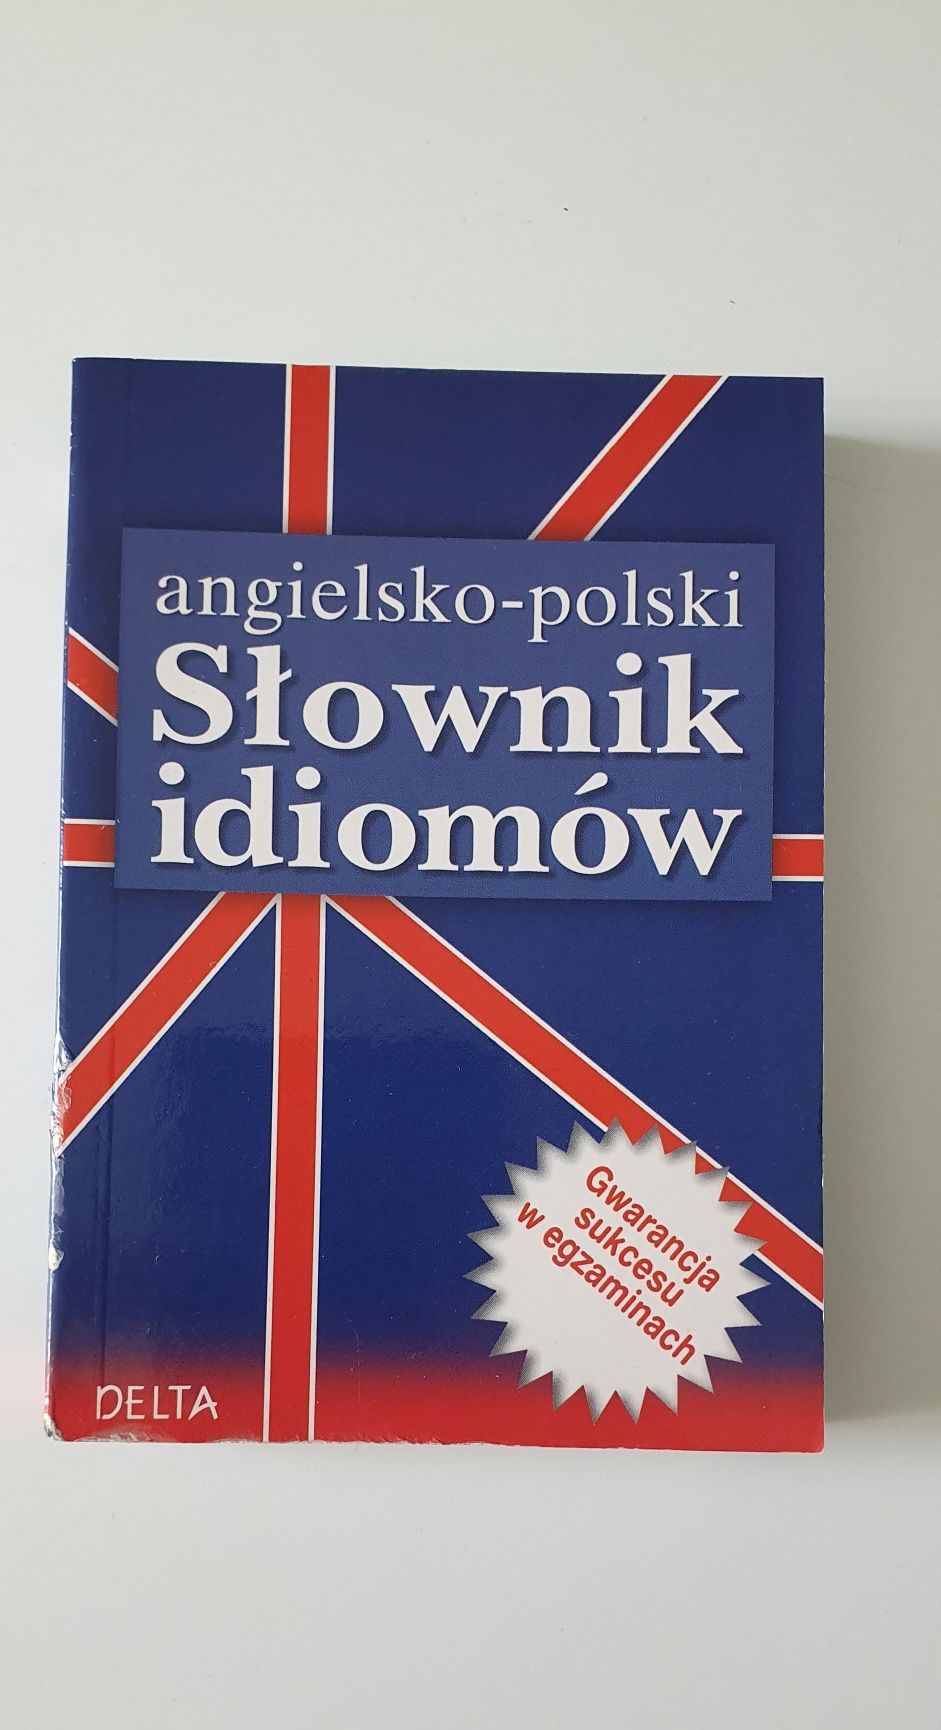 Angielsko-polski słownik idiomów podręczny